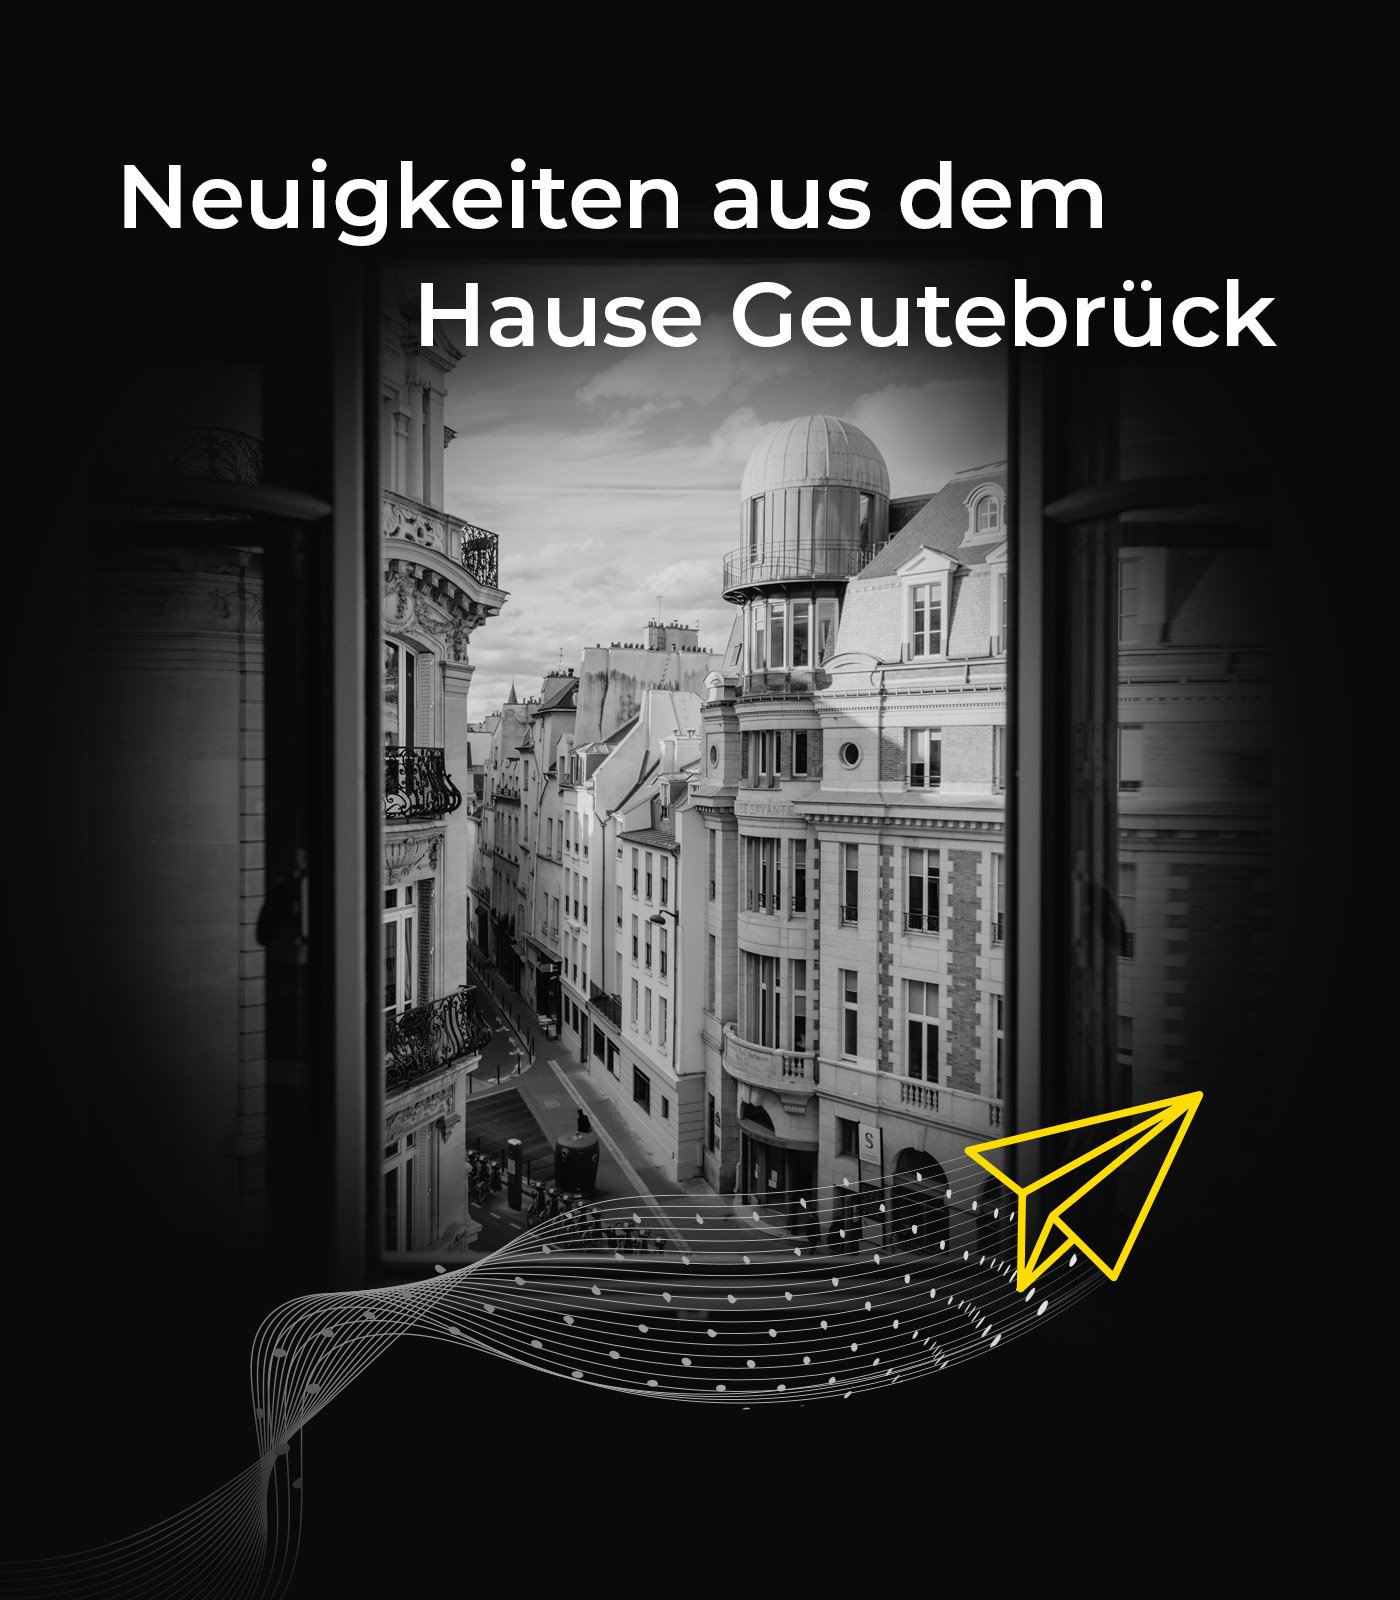 geutebrueck_banner-newsletter_de_desk